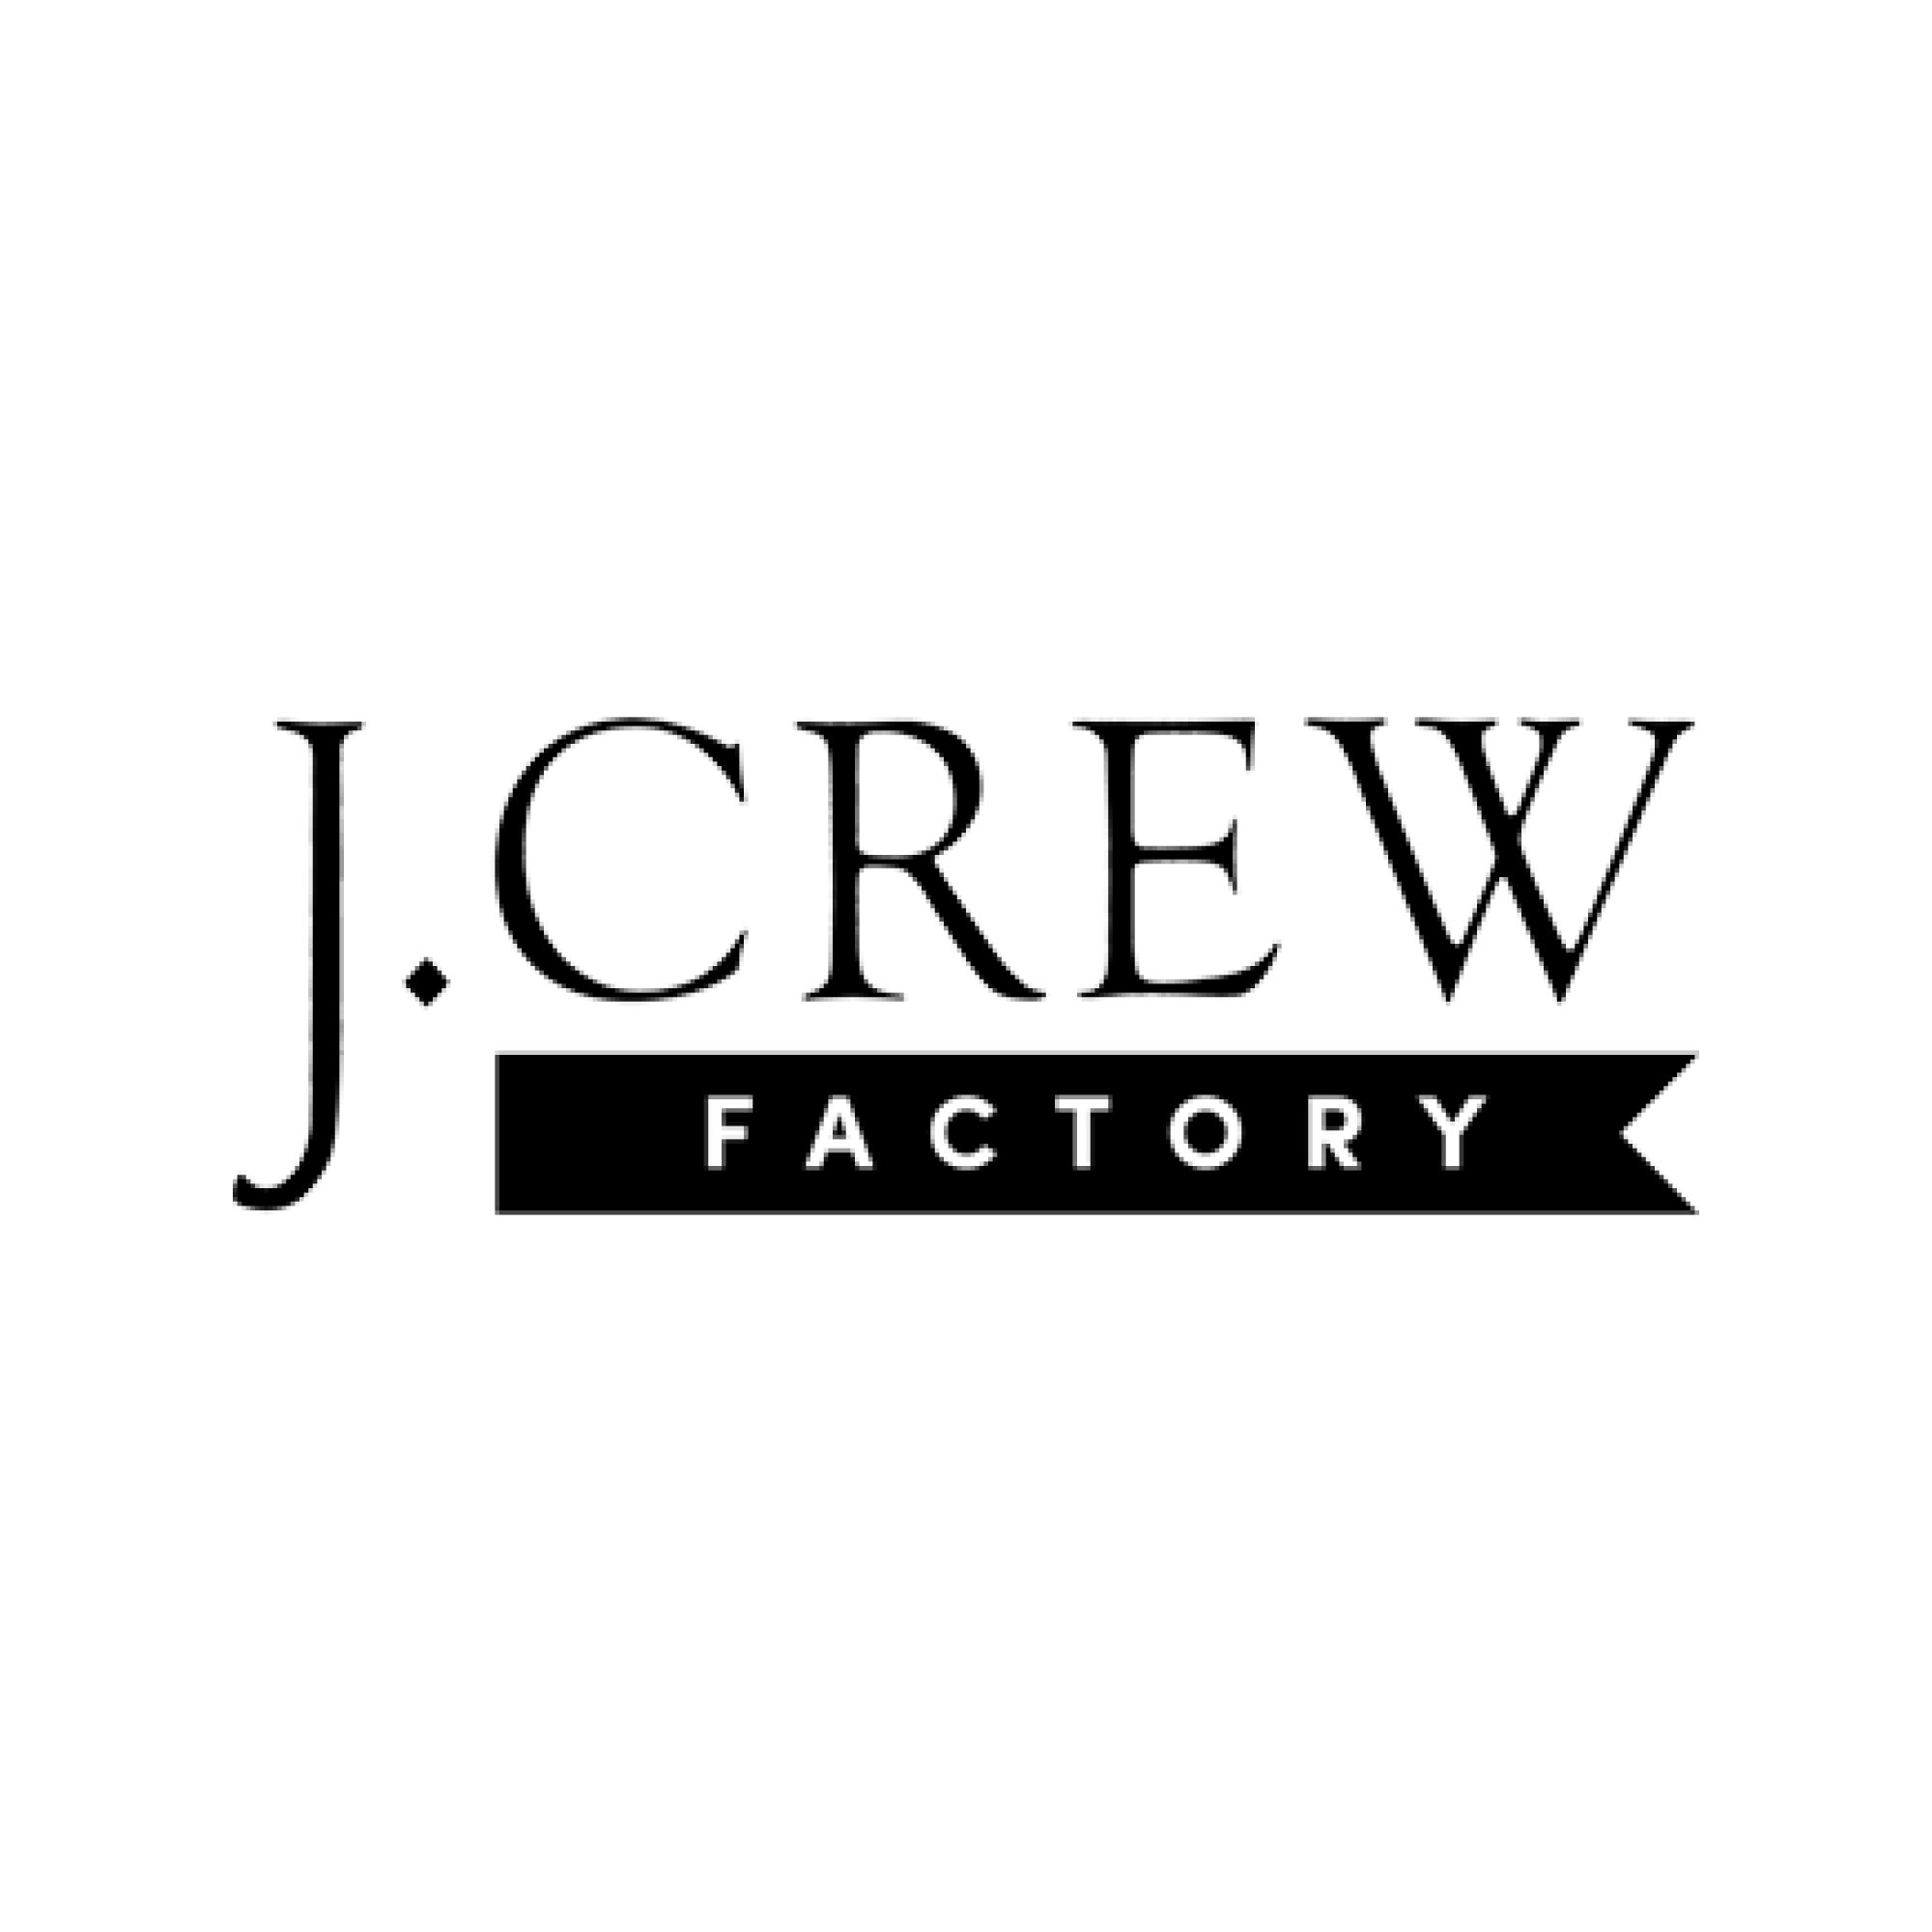 J.CrewFactory Logo.jpg